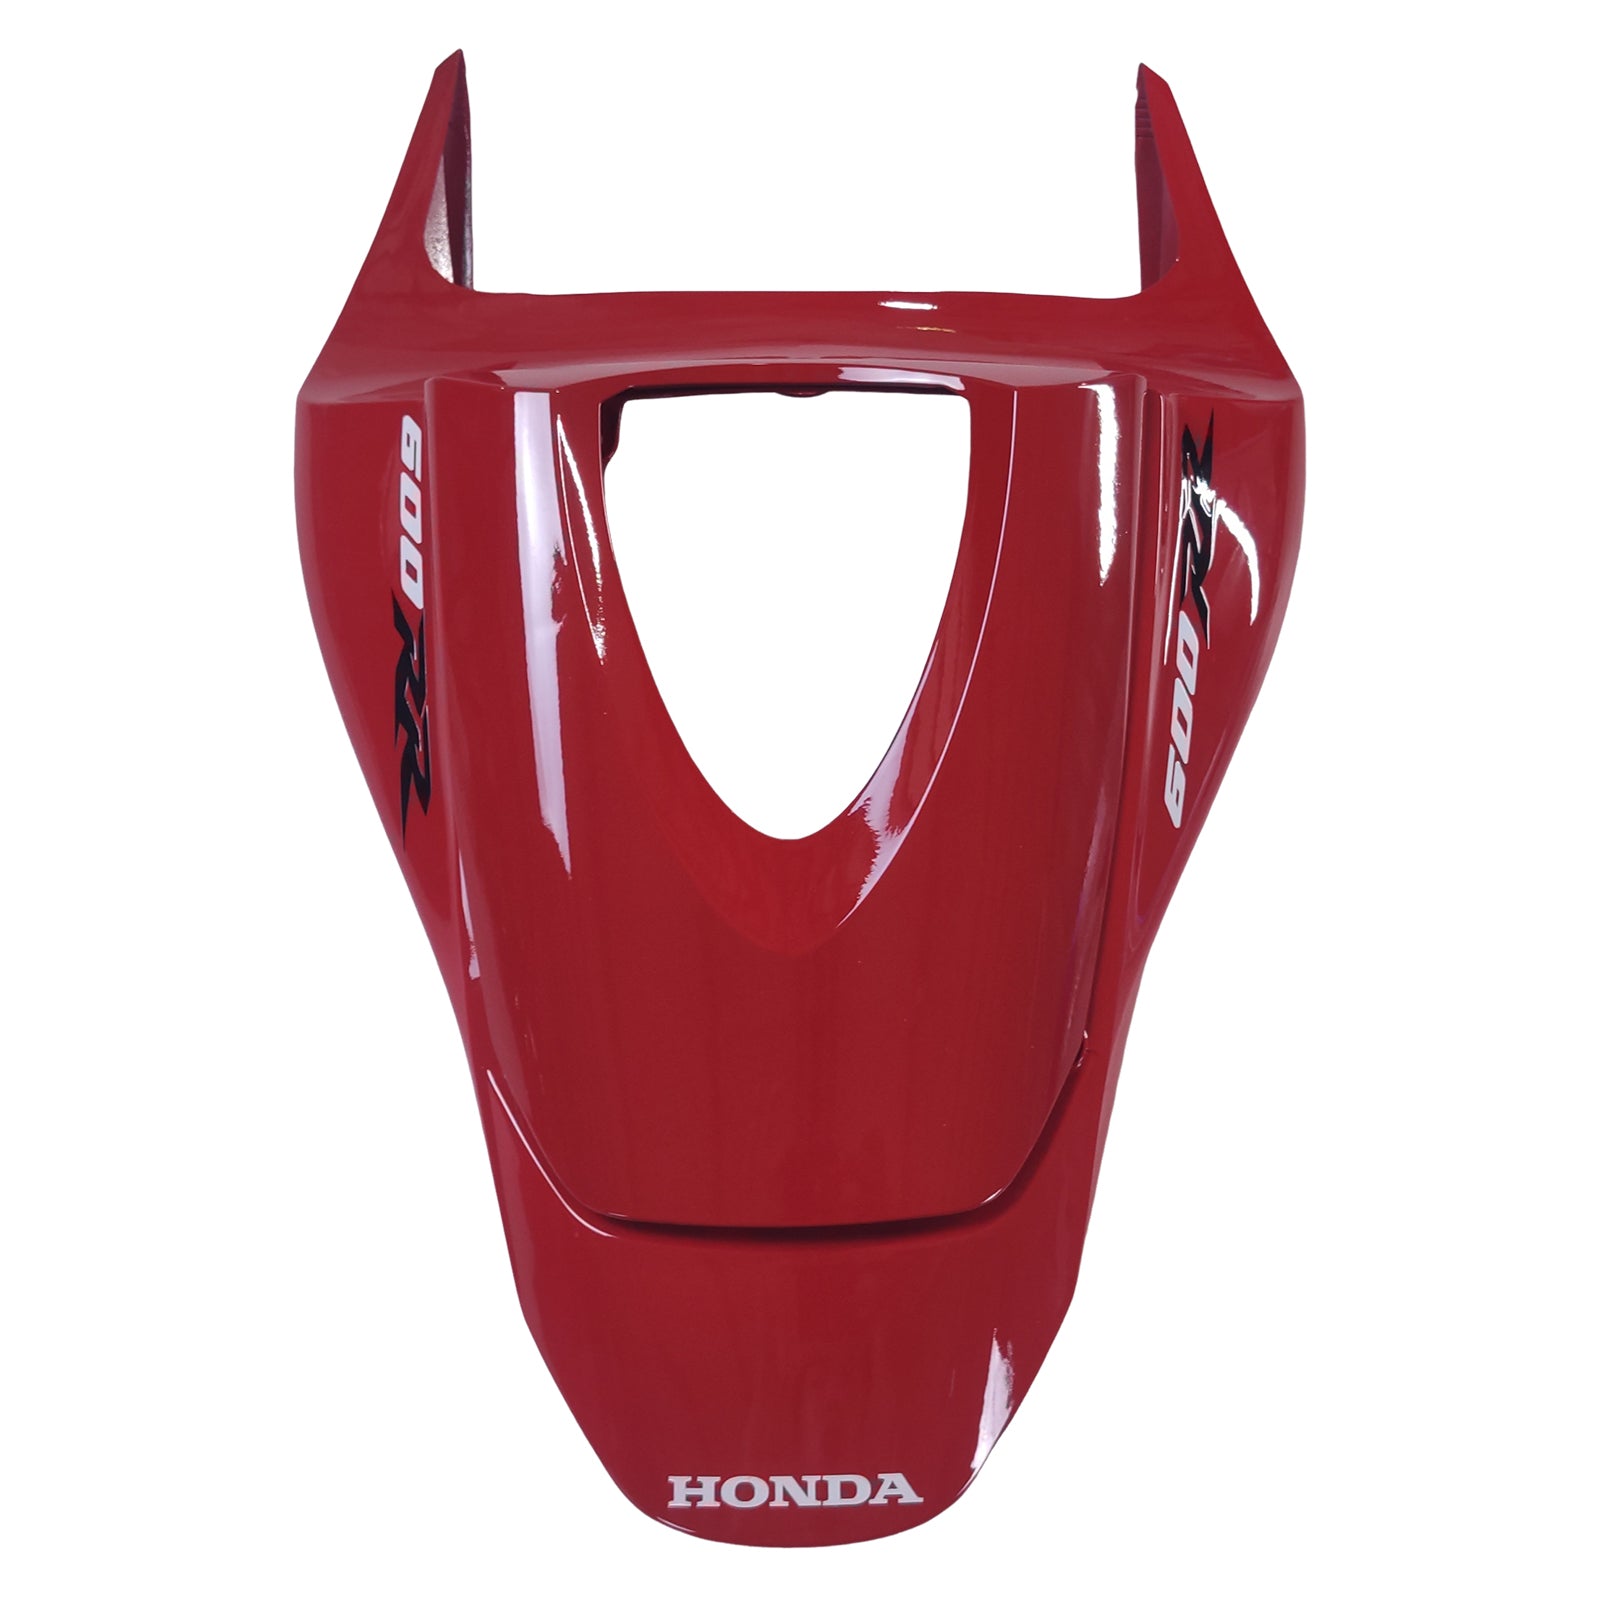 Kit carena Amotopart 2009-2012 Honda CBR600RR blu rosso bianco